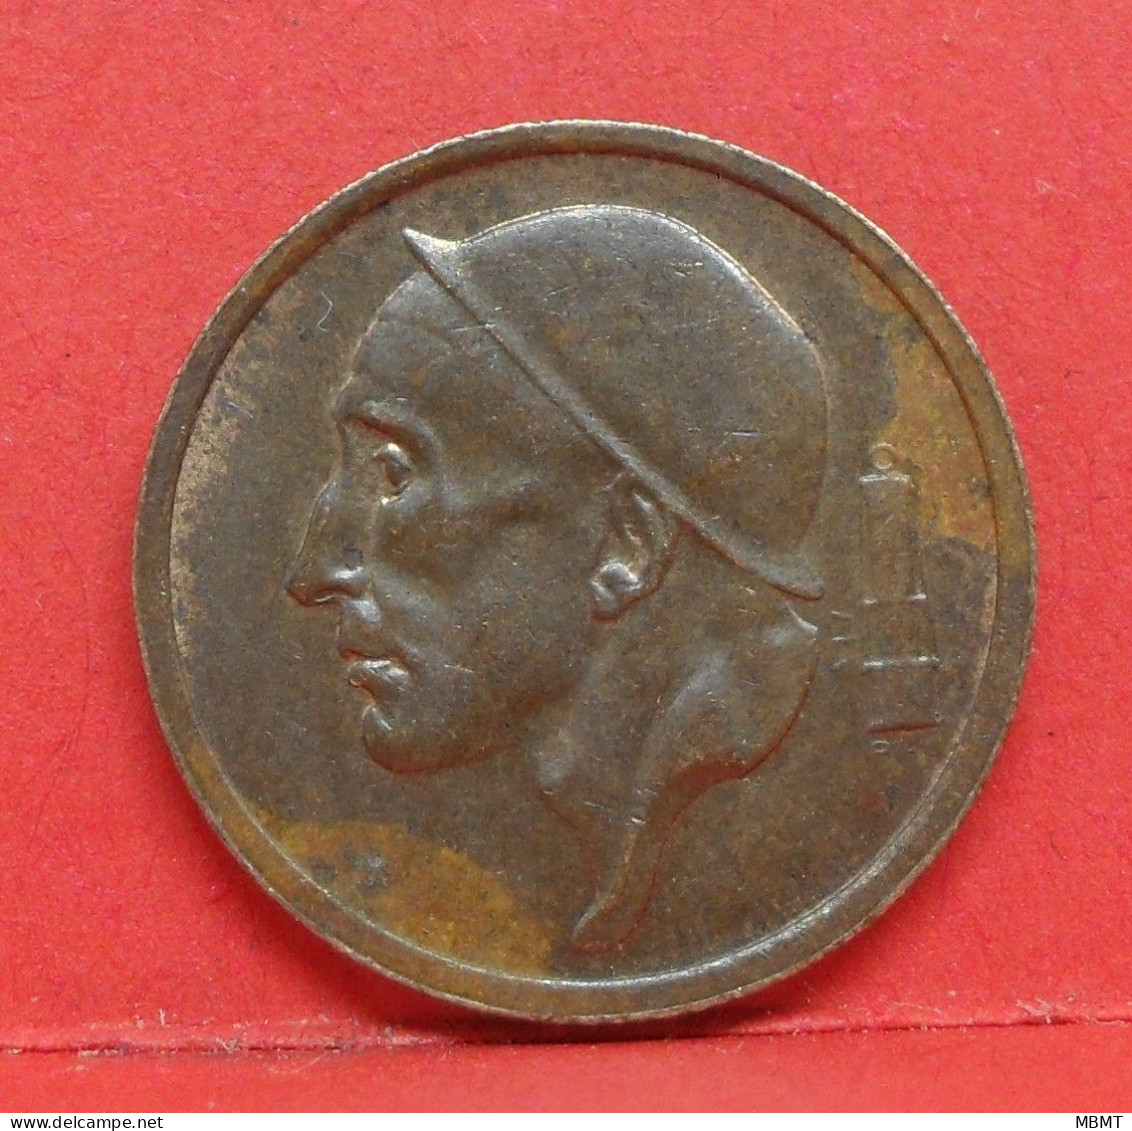 20 Centimes 1957 - SUP - Pièce Monnaie Belgique - Article N°1675 - 20 Cents